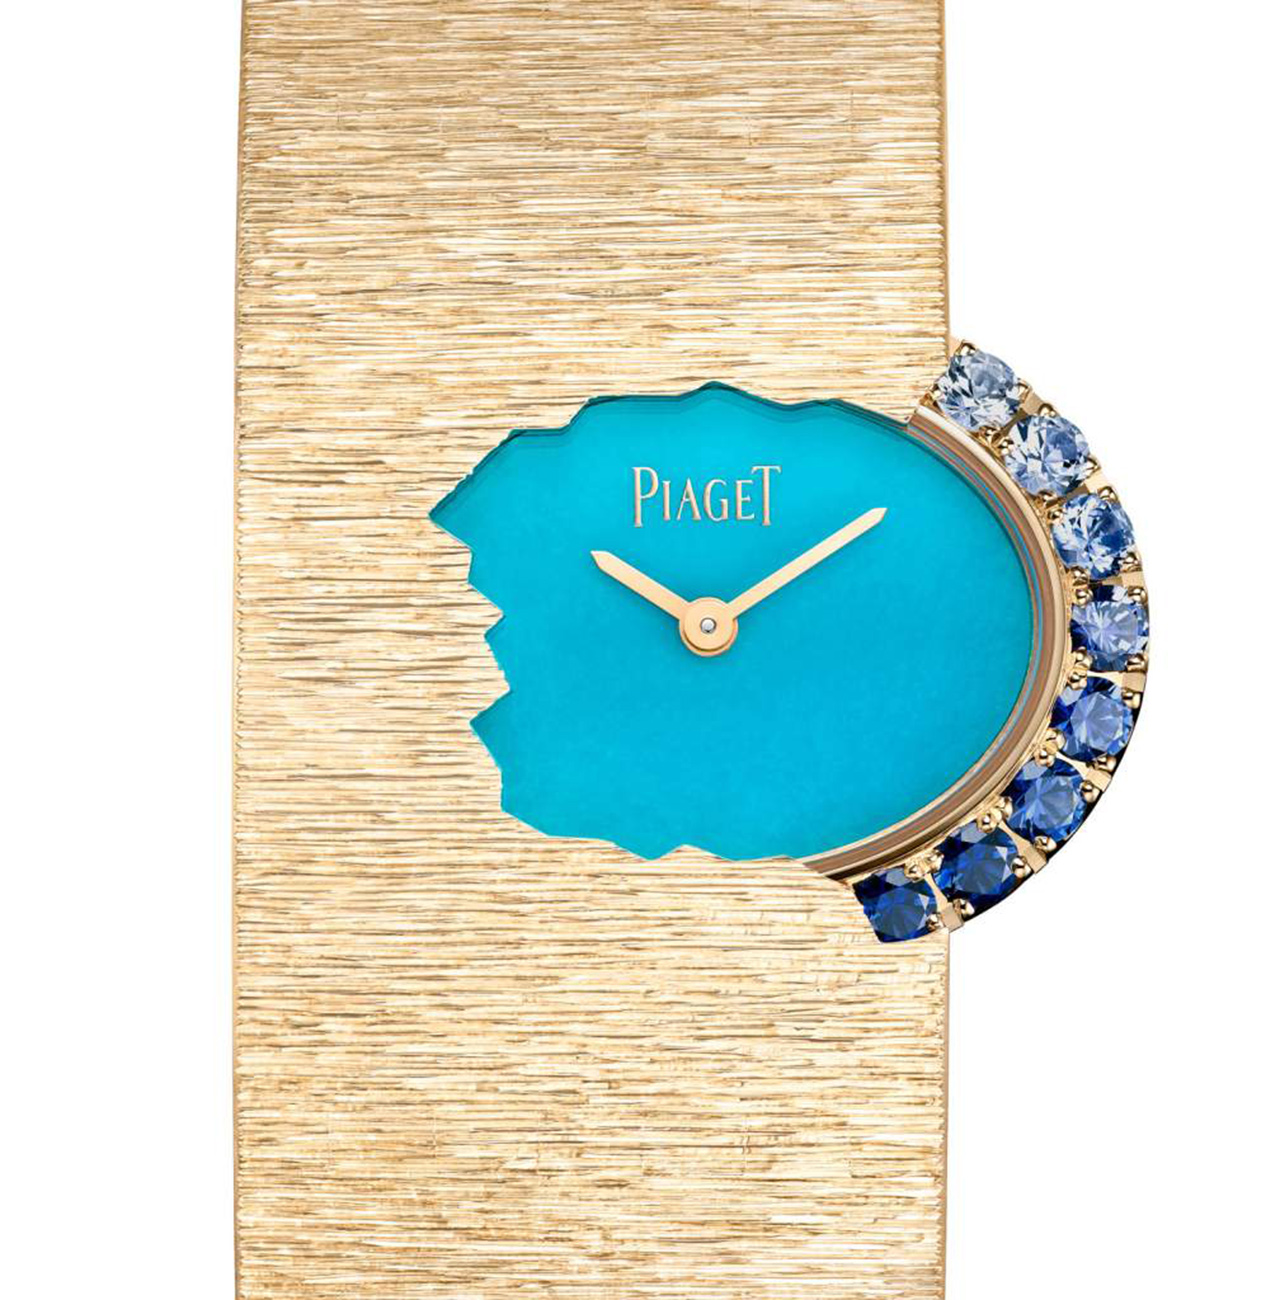 Piaget, Grand Prix d'Horlogerie de Genève